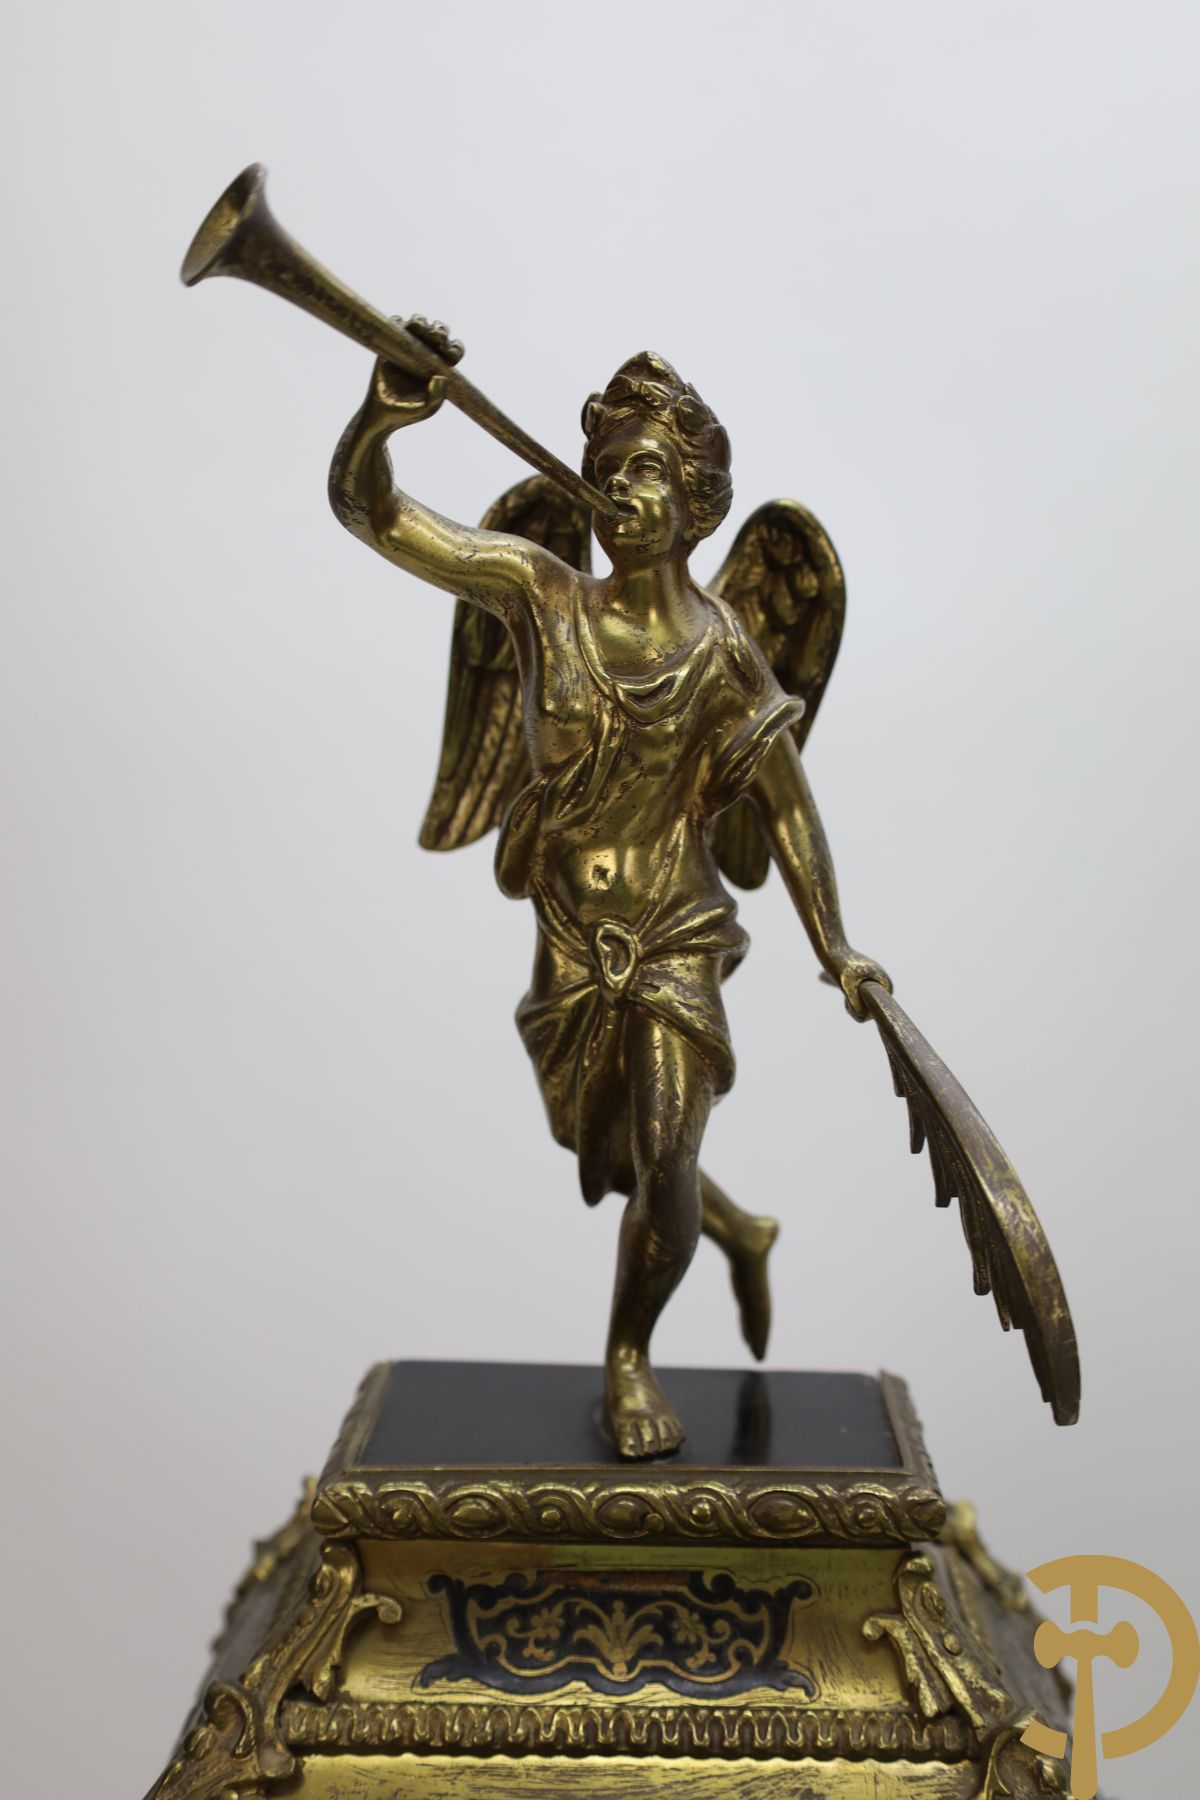 Napoleon III boulle kartel bezet met bronzen ornamenten van accanthusranken - bovenaan bekroond met trompetspelende cupido - op muurconsole